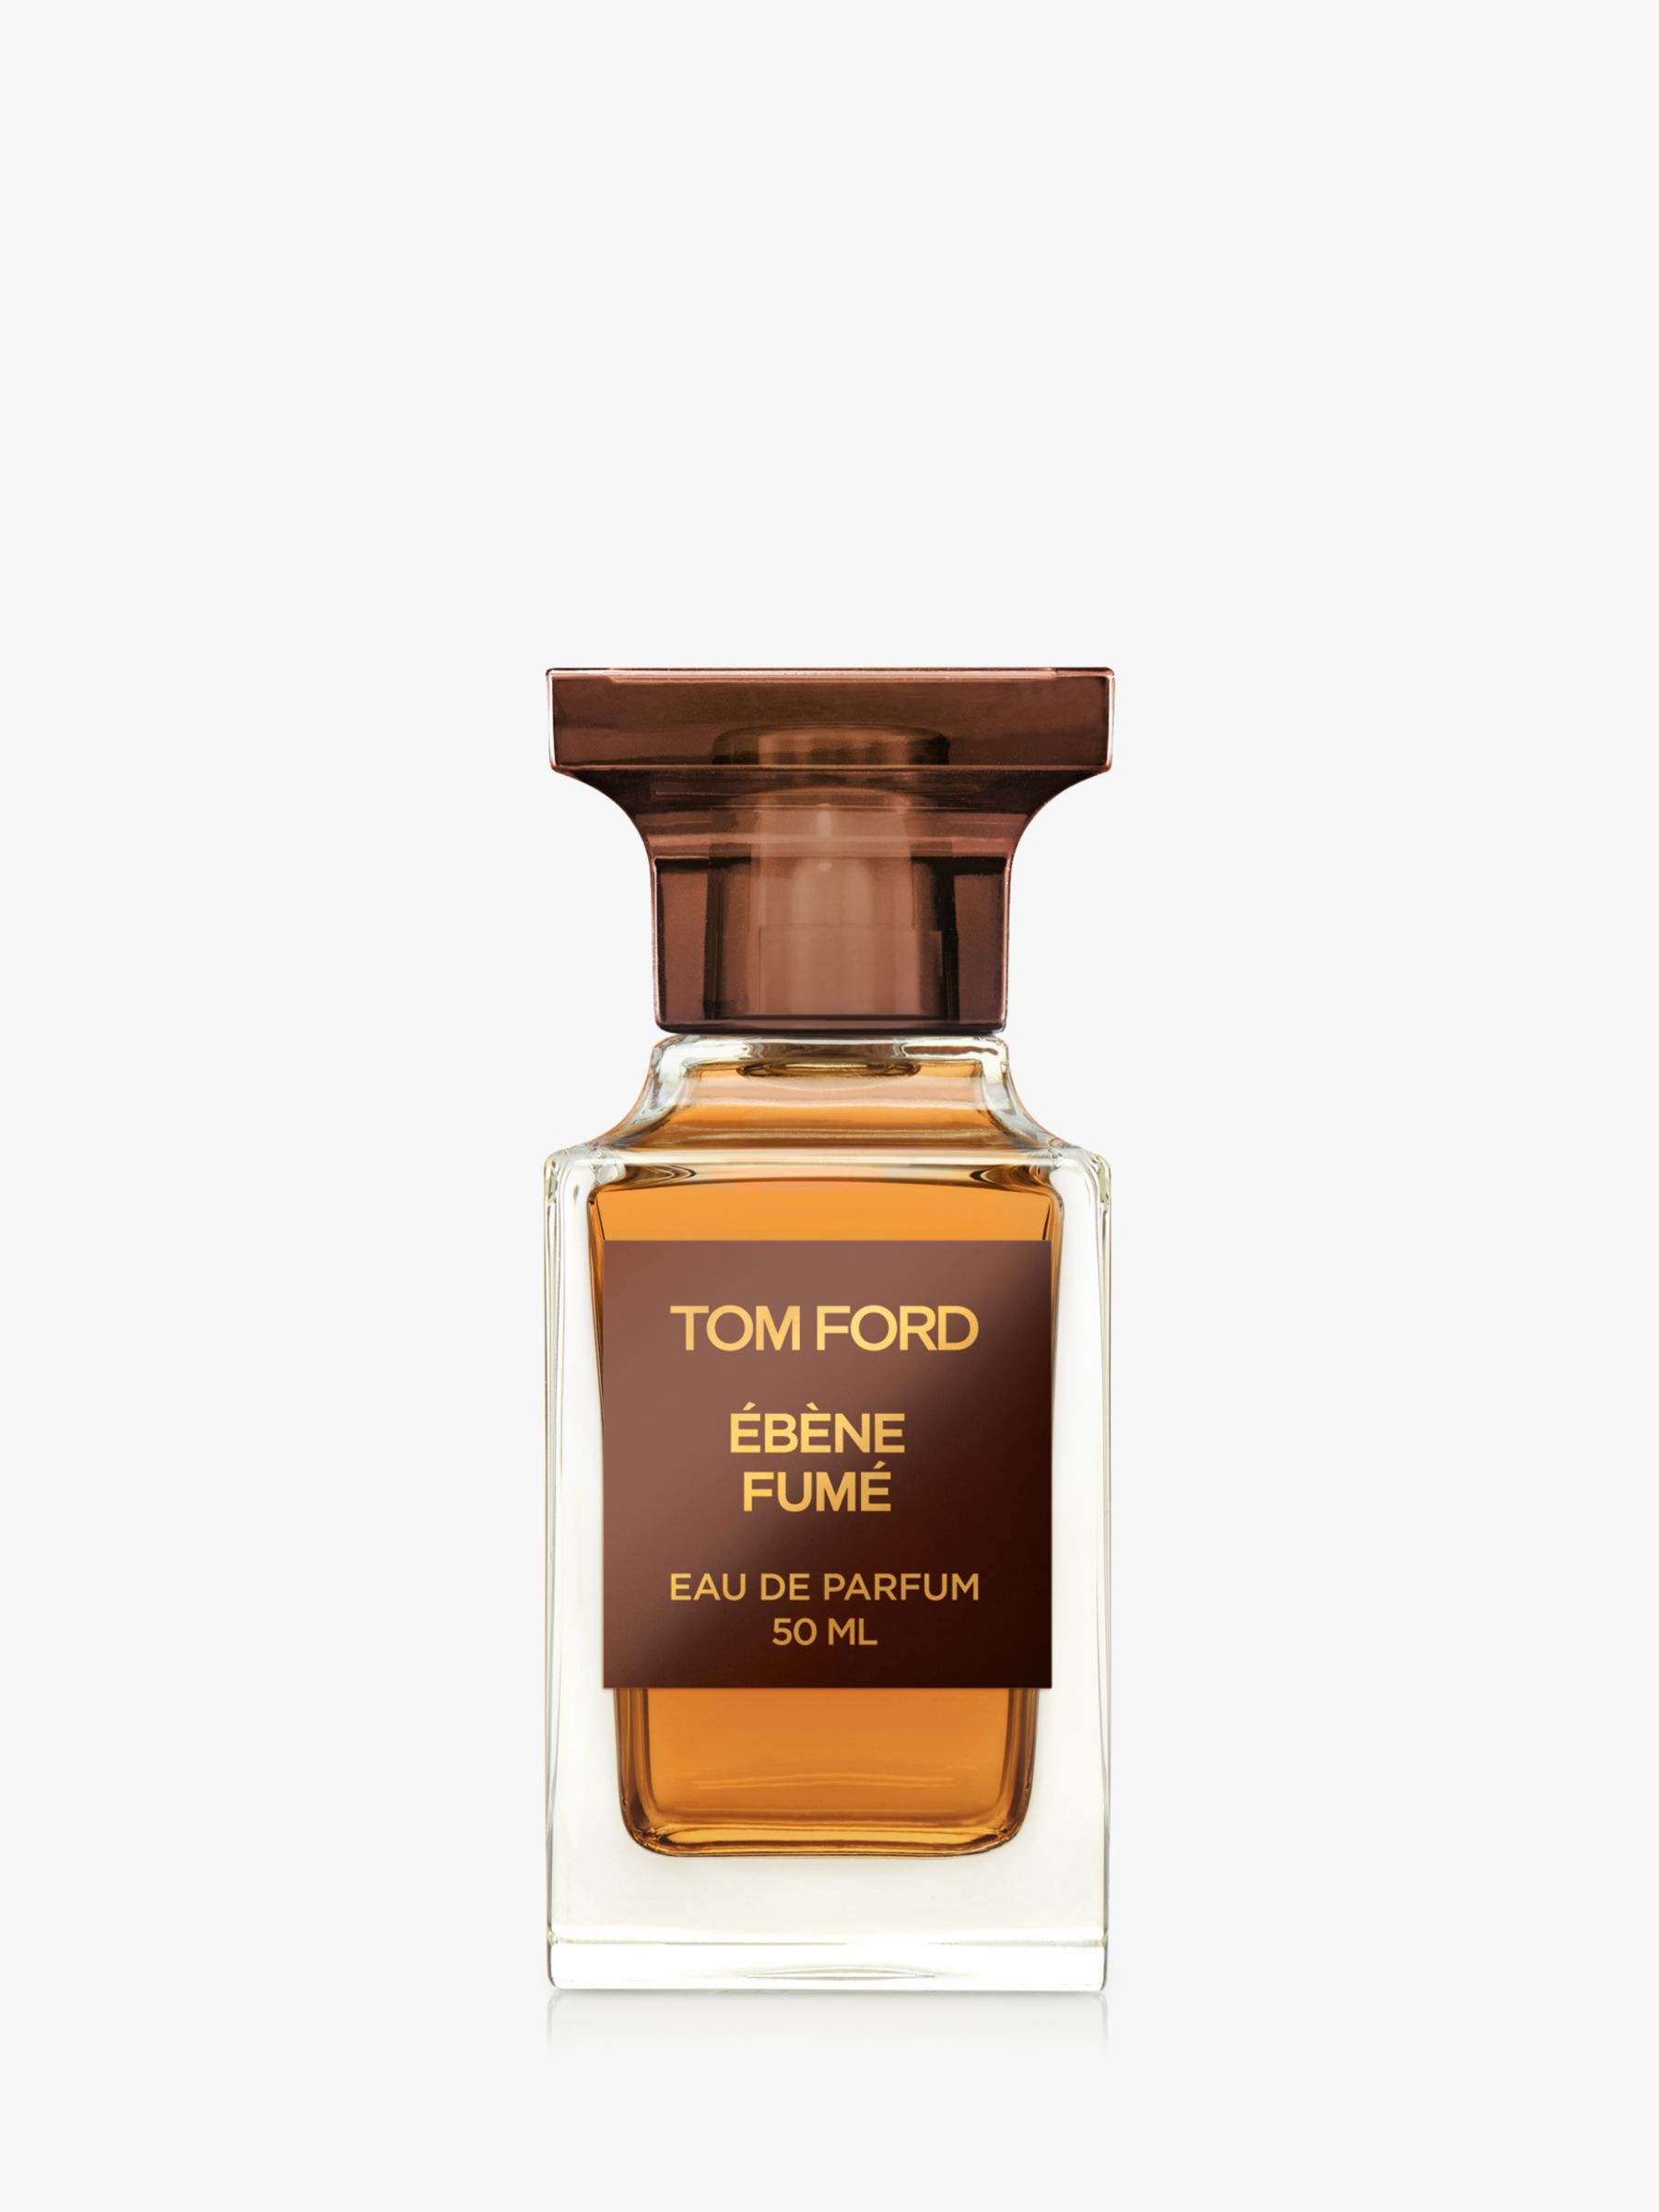 TOM FORD Private Blend Ébène Fumé Eau de Parfum, 50ml at John Lewis &  Partners